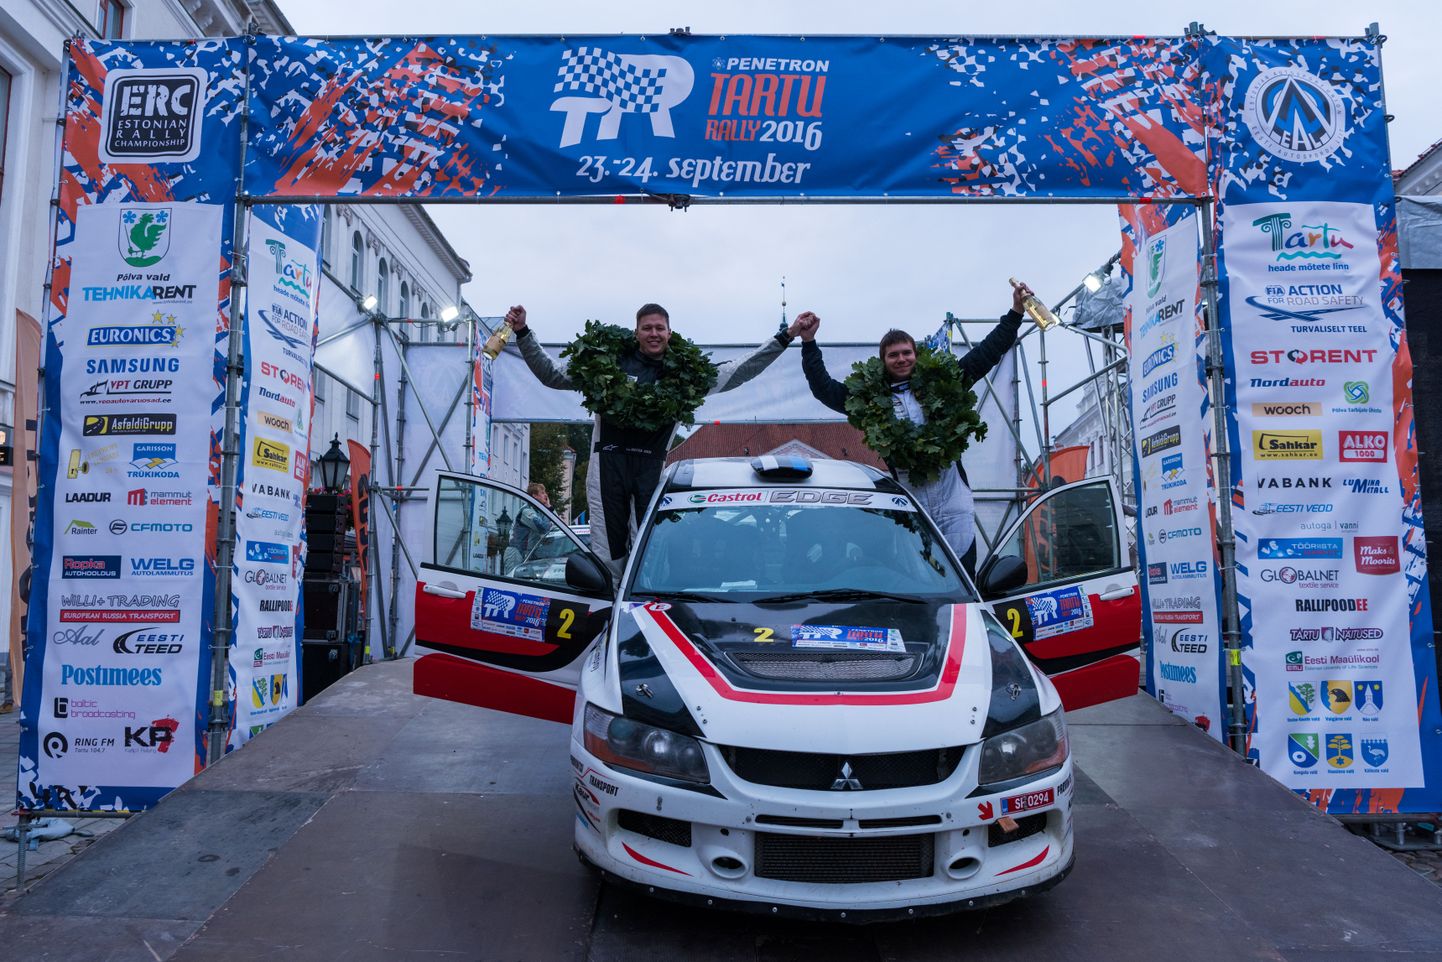 Sellel nädalavahetusel sõideti Eesti autoralli ja DMACK Trophy meistrivõistluste viies etapp Tartu Rally, mille võitis Egon Kaur (kaardilugejaks Silver Simm), kes edestas 6,3 sekundiga Rainer Ausi. Kolmanda koha sai Kaspar Koitla. Ühtlasi kindlustas Kaur endale N4 klassi Eesti meistritiitli.